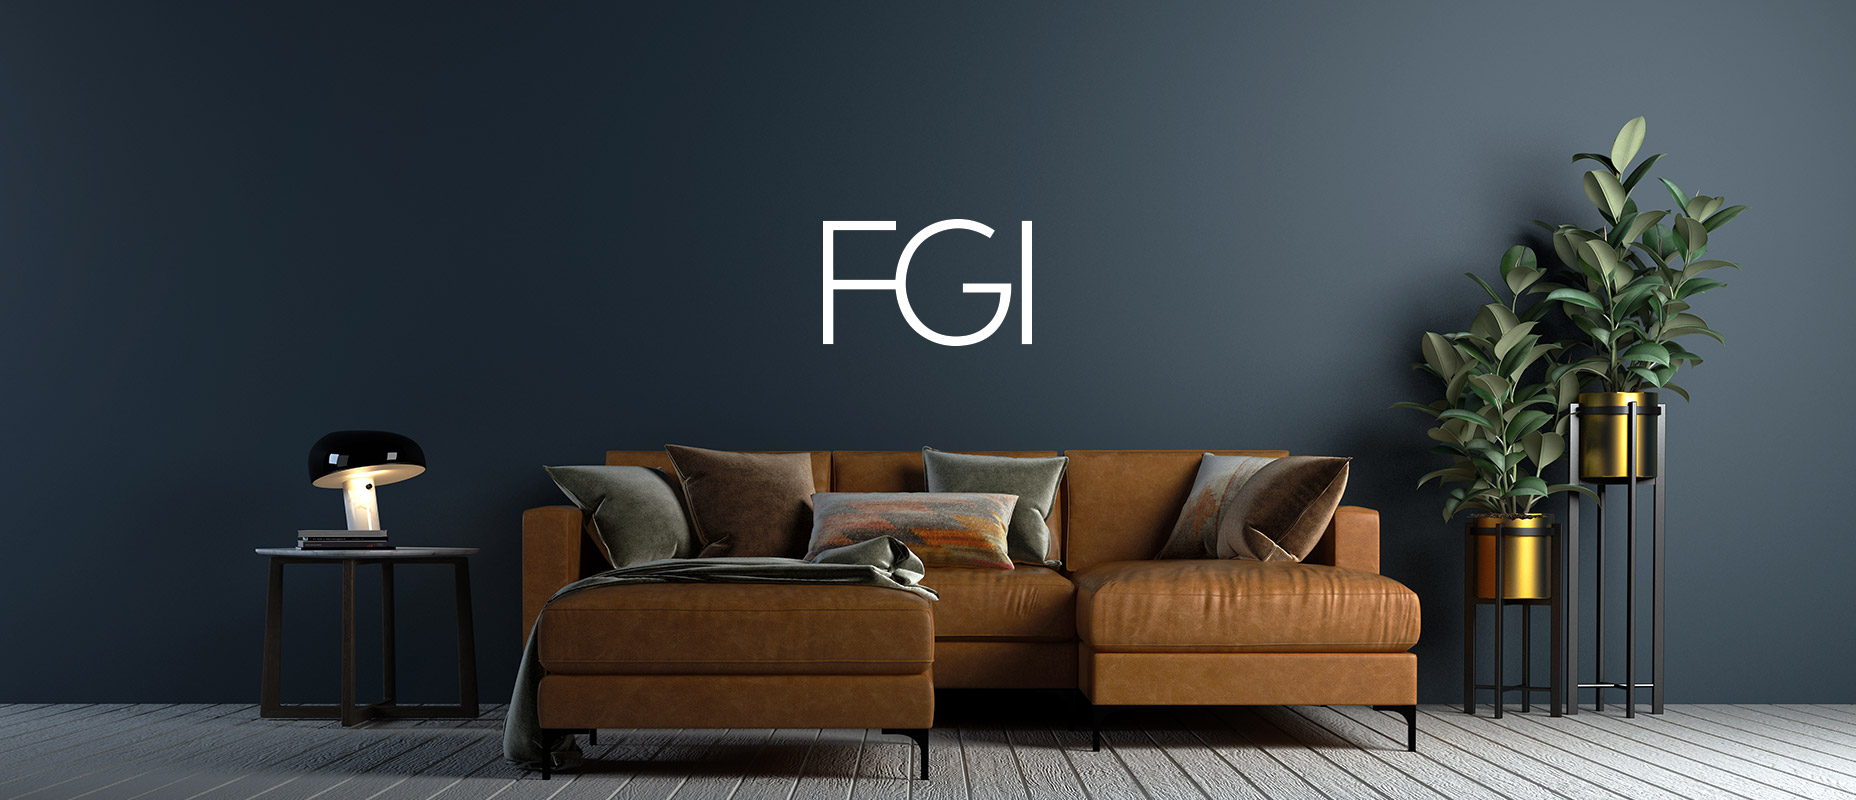 الاكتتاب العام لشركة FGI Industries